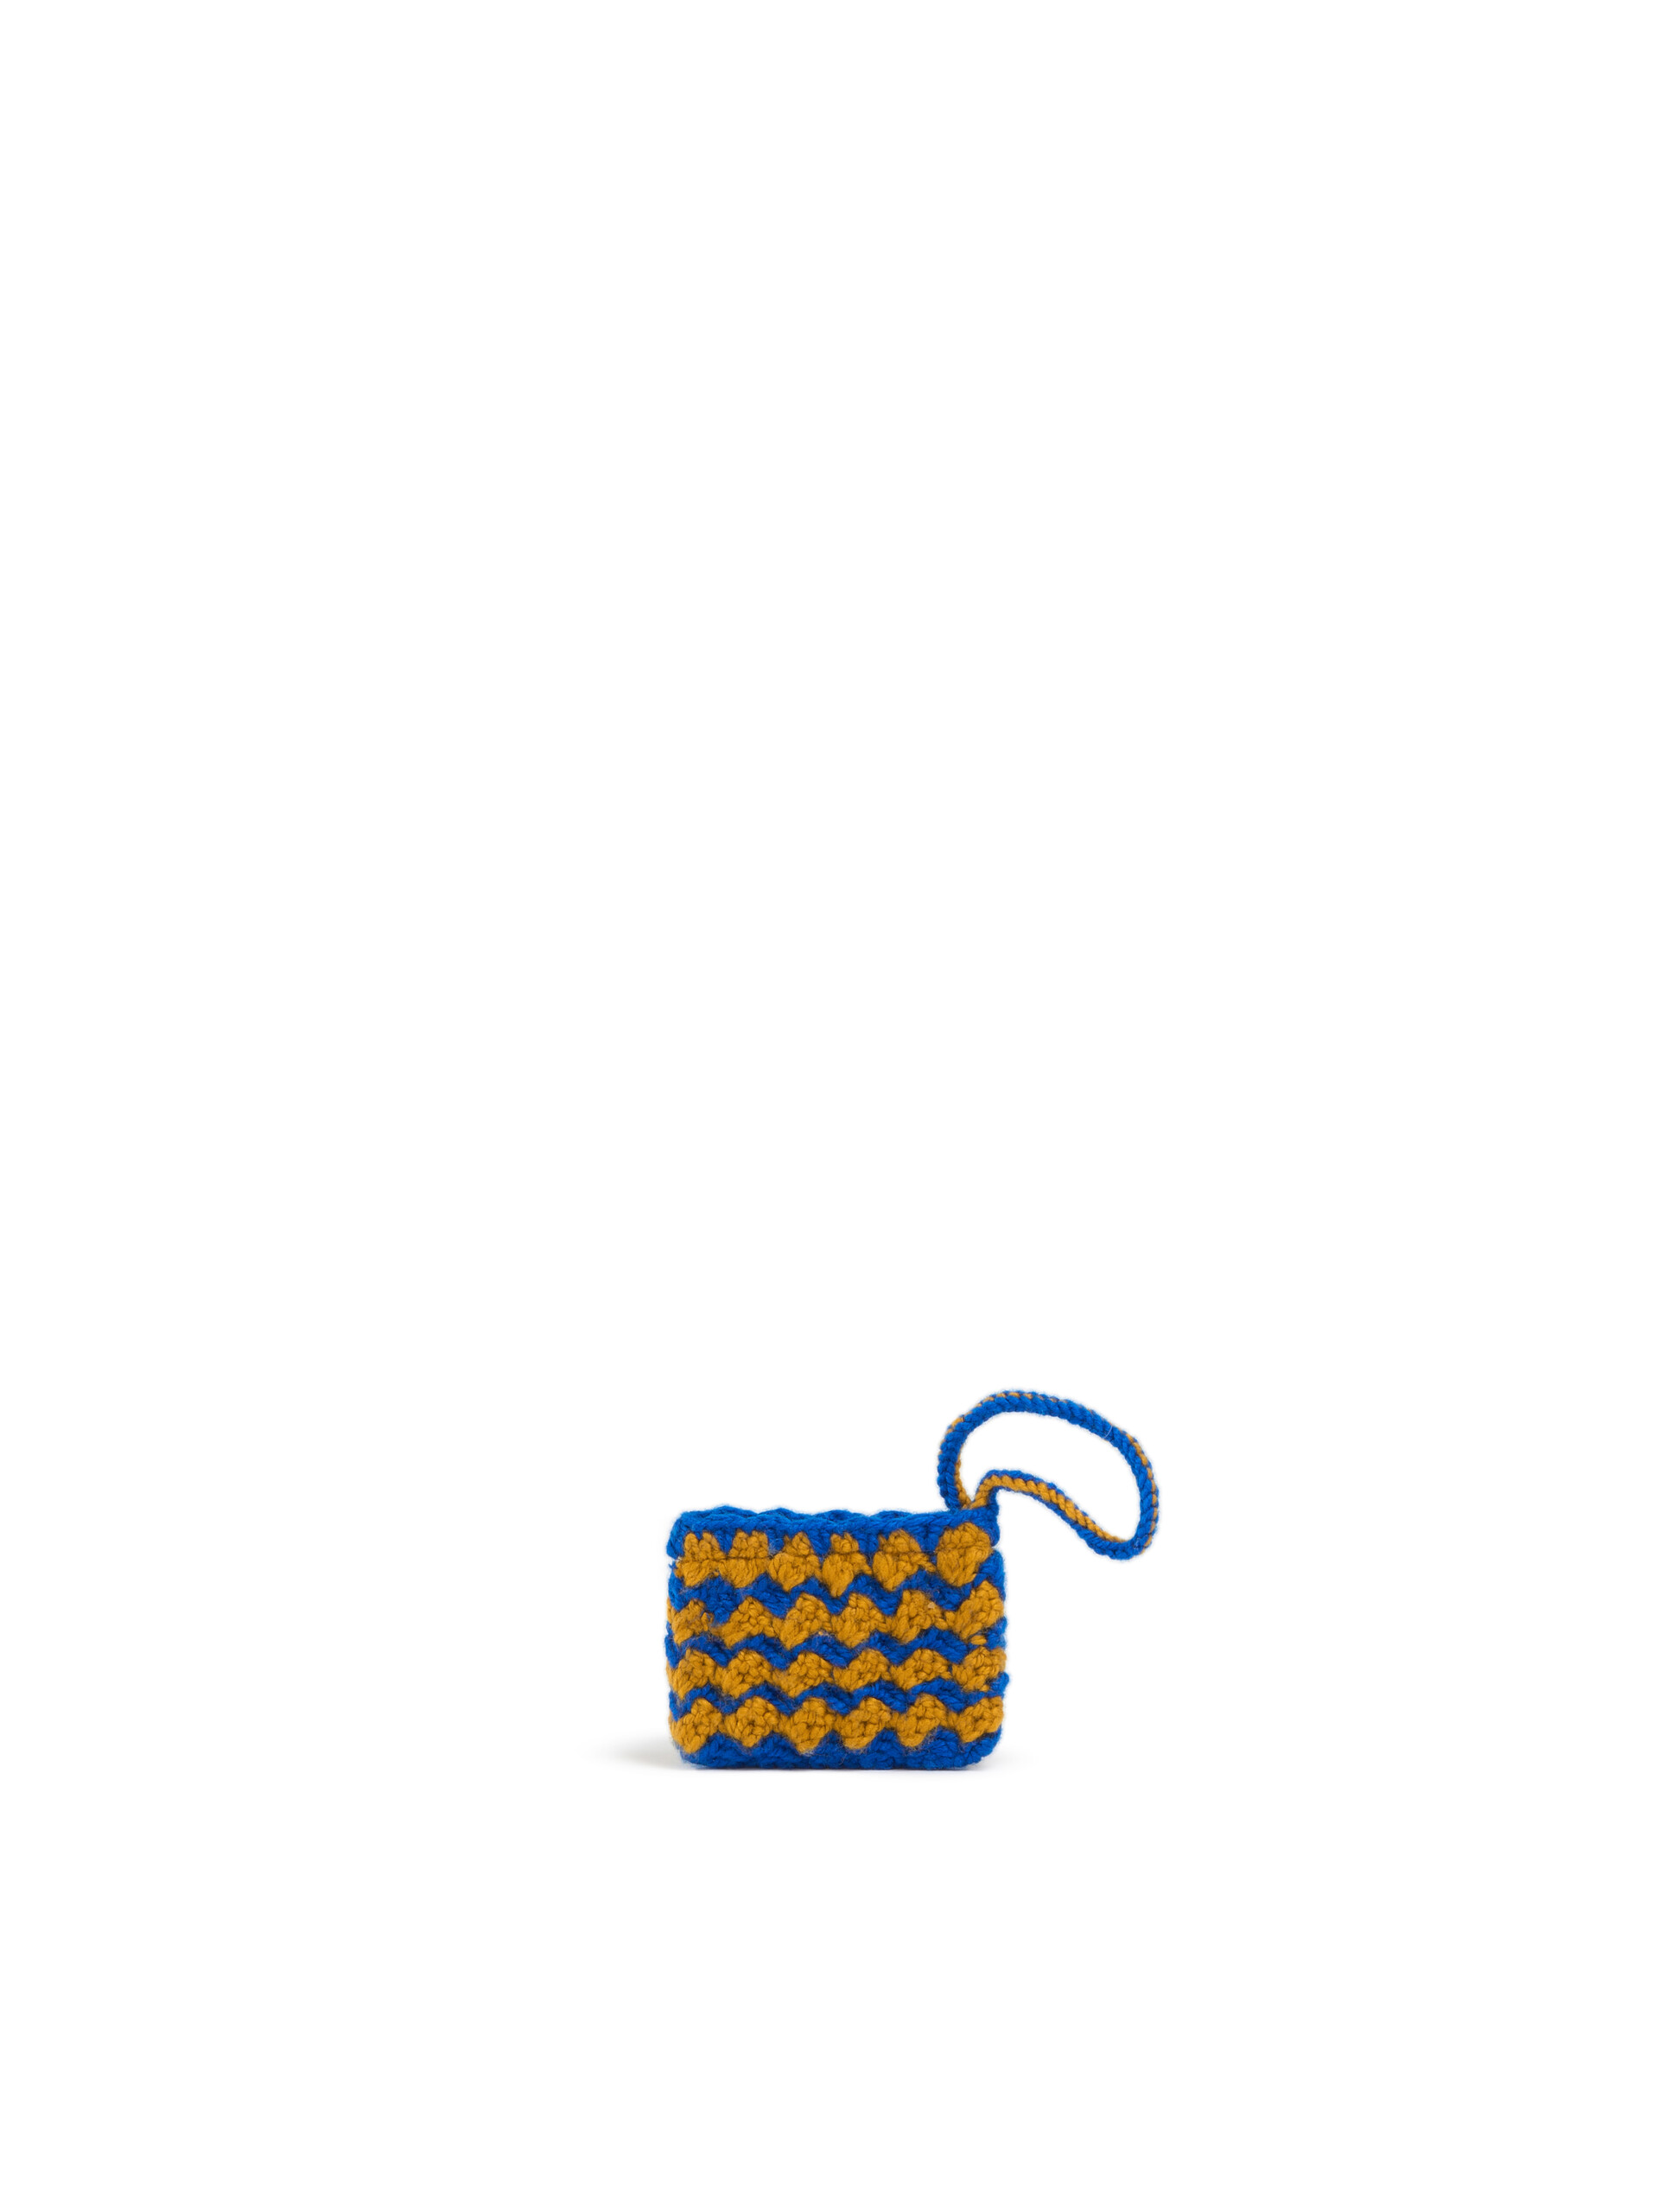 Black Crochet Marni Market Mini Chessboard Pouch - Accessories - Image 2